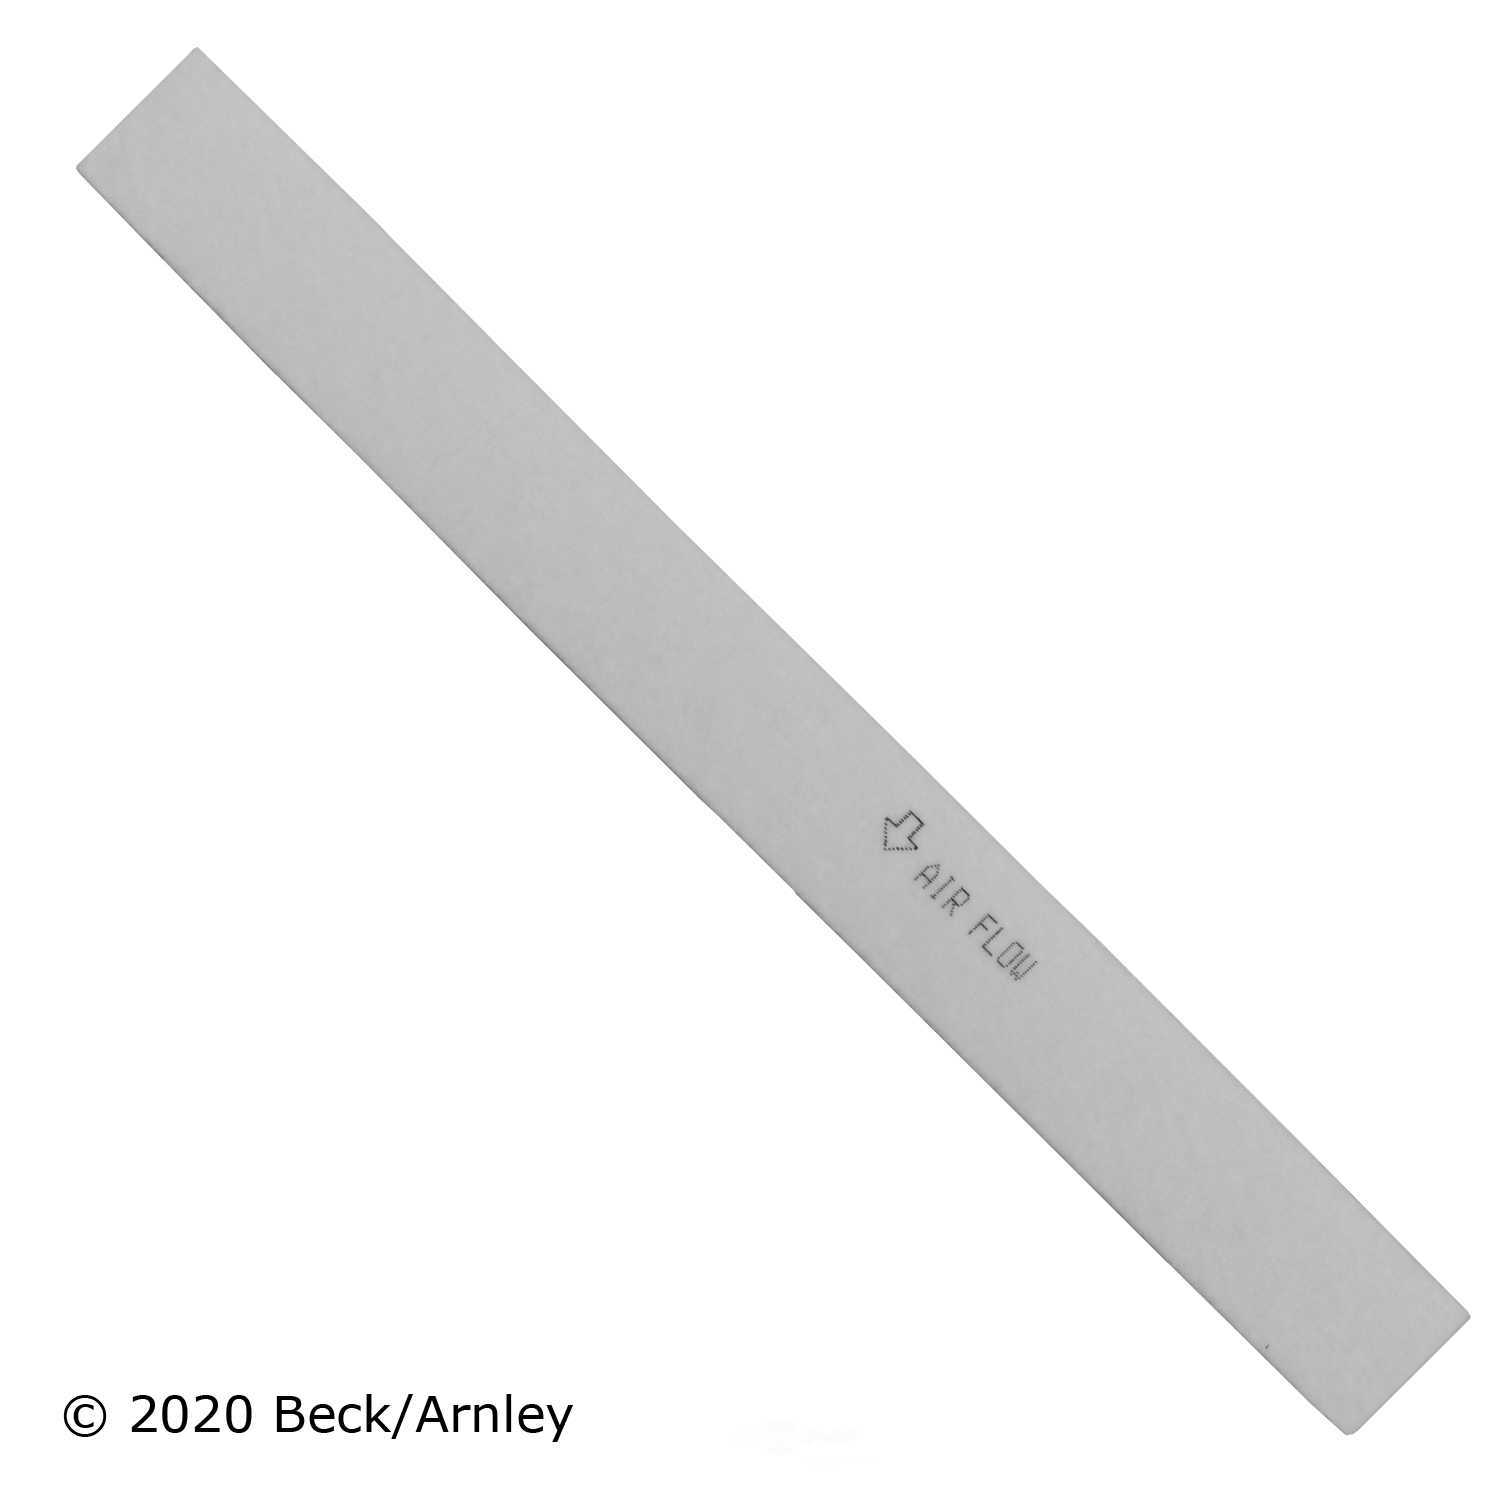 BECK/ARNLEY - Cabin Air Filter - BAR 042-2128